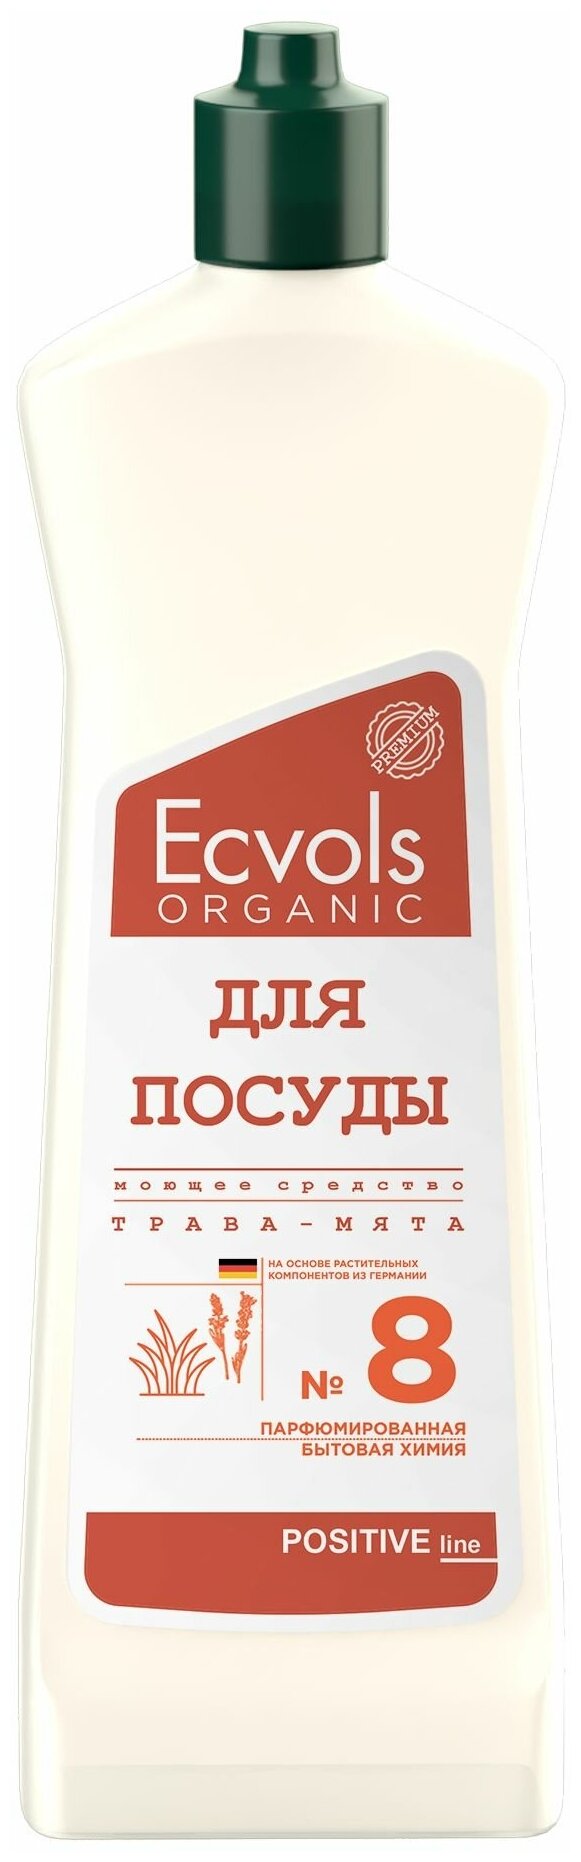 Средство для мытья посуды Ecvols Organic Трава и мята 500 мл, антибактериальное, гипоаллергенное, биоразлагаемое, эко, моющее